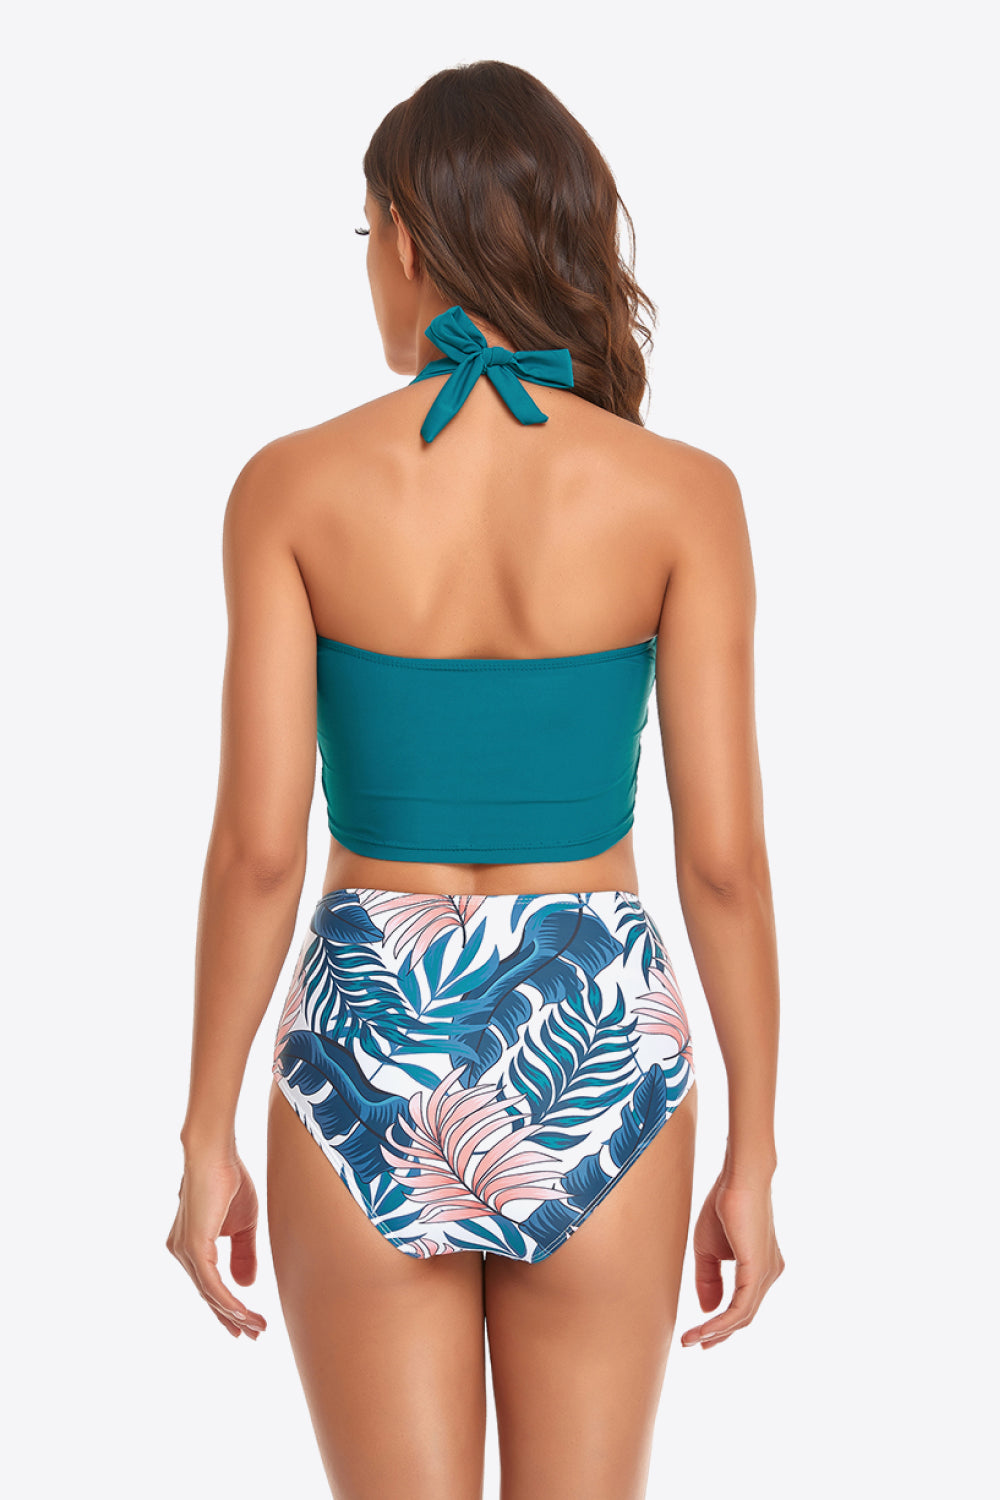 Botanical Print Halter Neck Drawstring Detail Bikini Set - Dash Trend